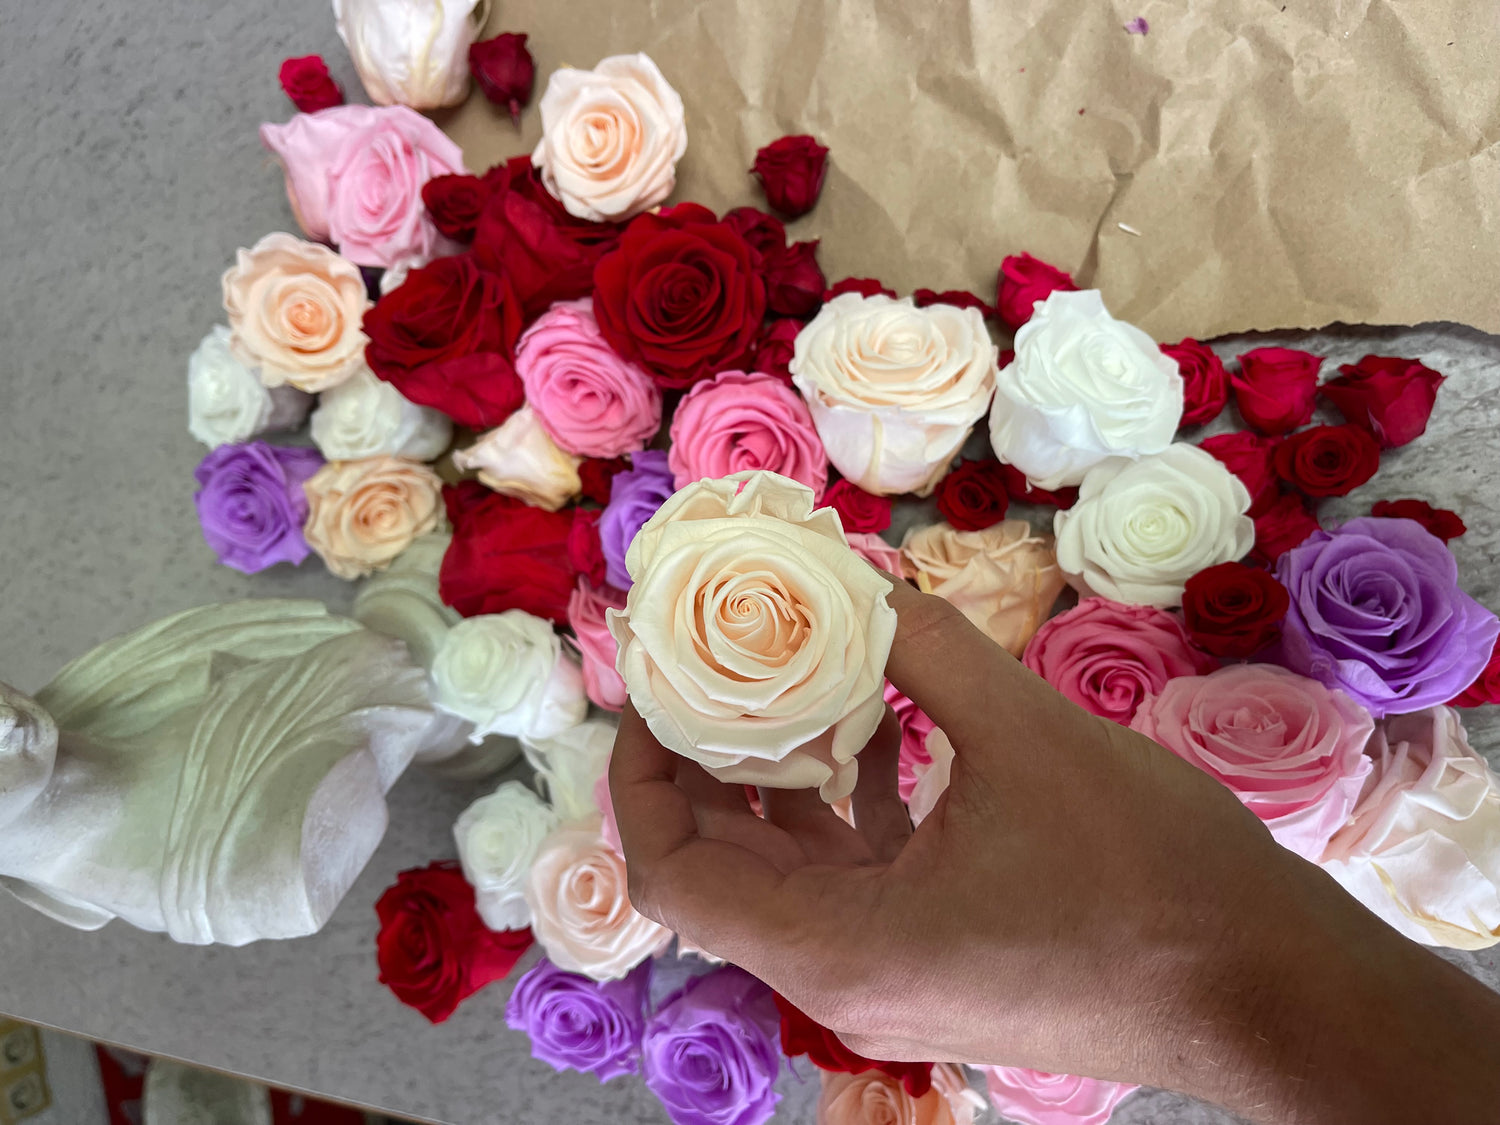 Echte Rosen Infinity ewige und unendliche Rosen in beige rot rosa lila in ein wunderschönes Bild eingefasst und verewigt 